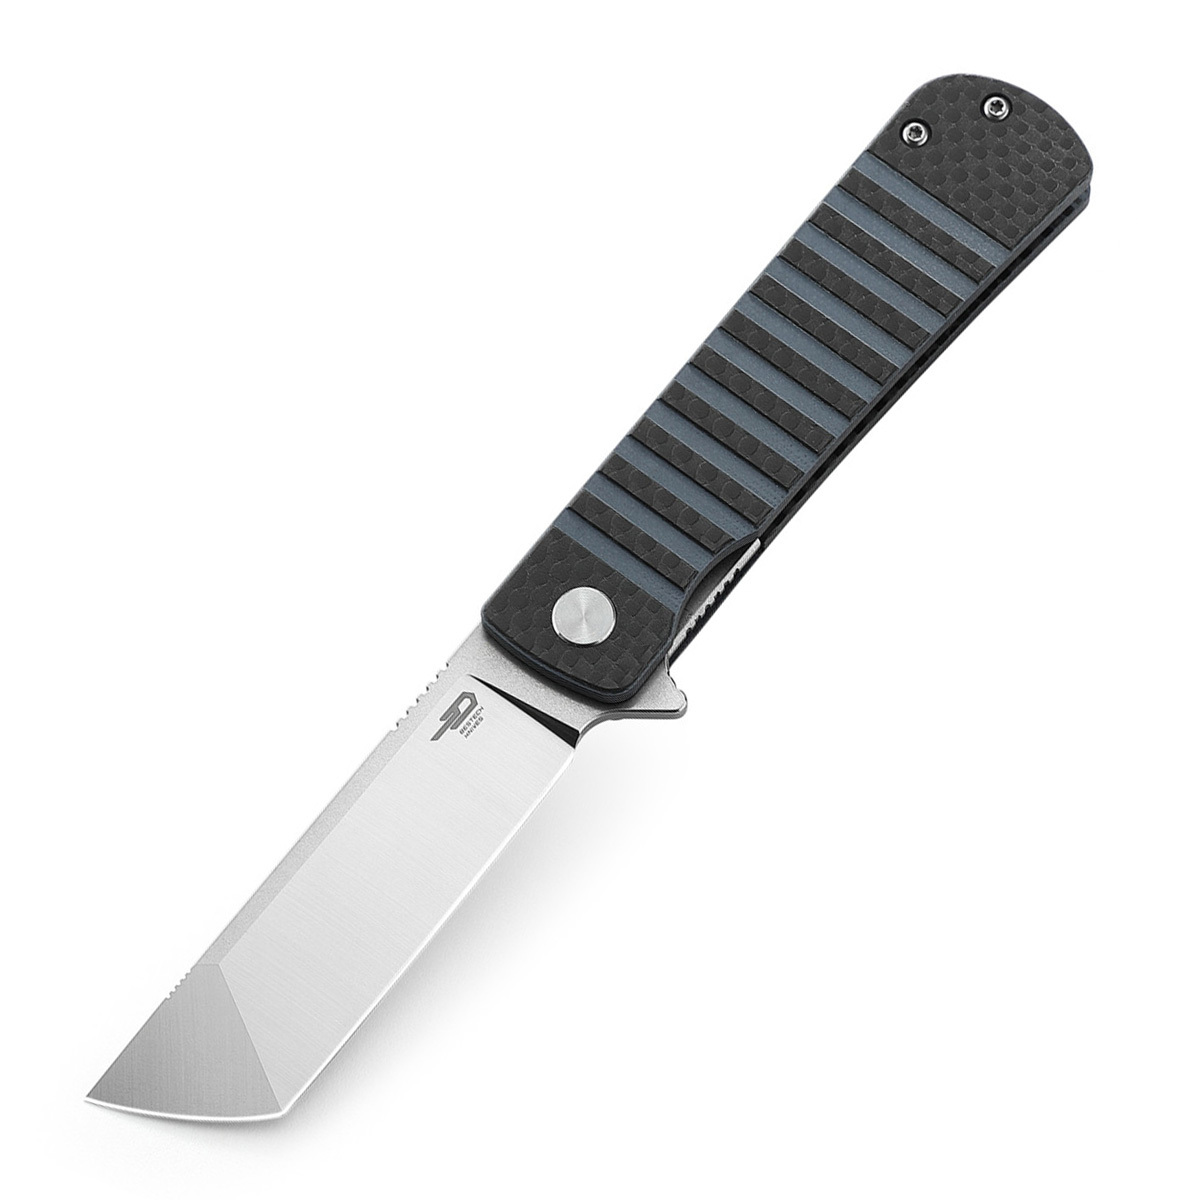 Складной нож Bestech Titan, сталь 154CM, рукоять черно-синяя G10/карбон складной нож bestech lion d2 песочный